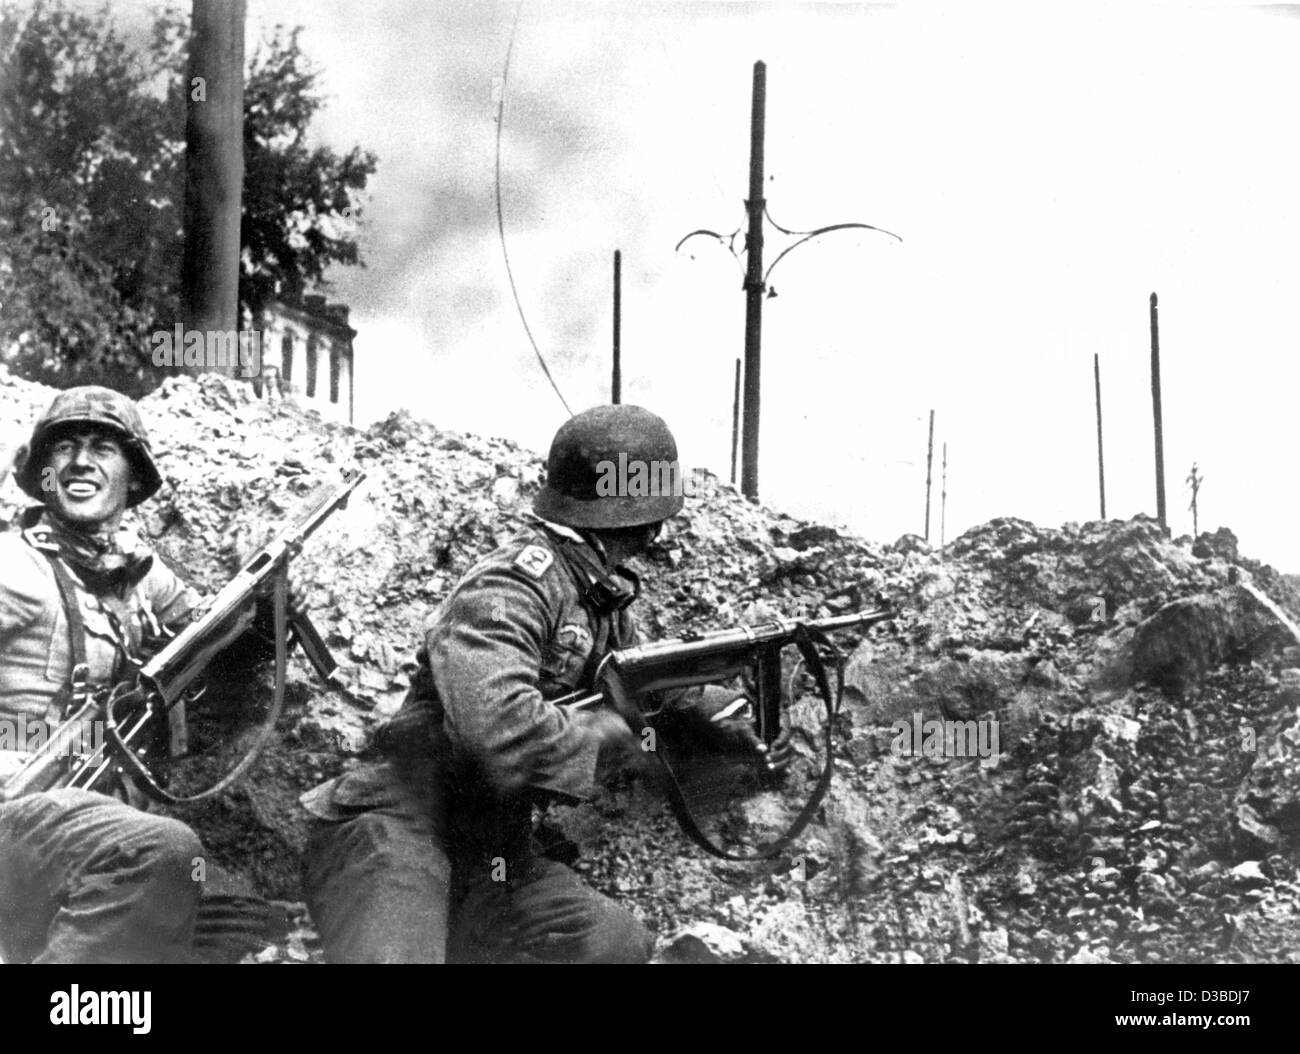 (Dpa-Dateien) - kämpfen deutsche Soldaten der Infanterie in den Straßen während der Schlacht von Stalingrad, Stalingrad, Sowjetunion (heute Wolgograd, Russland), undatiert Filer. Die Schlacht um Stalingrad (August 1942 - Februar 1943) war der entscheidende Weltkrieg sowjetische Sieg, der den südlichen deutschen gestoppt Stockfoto